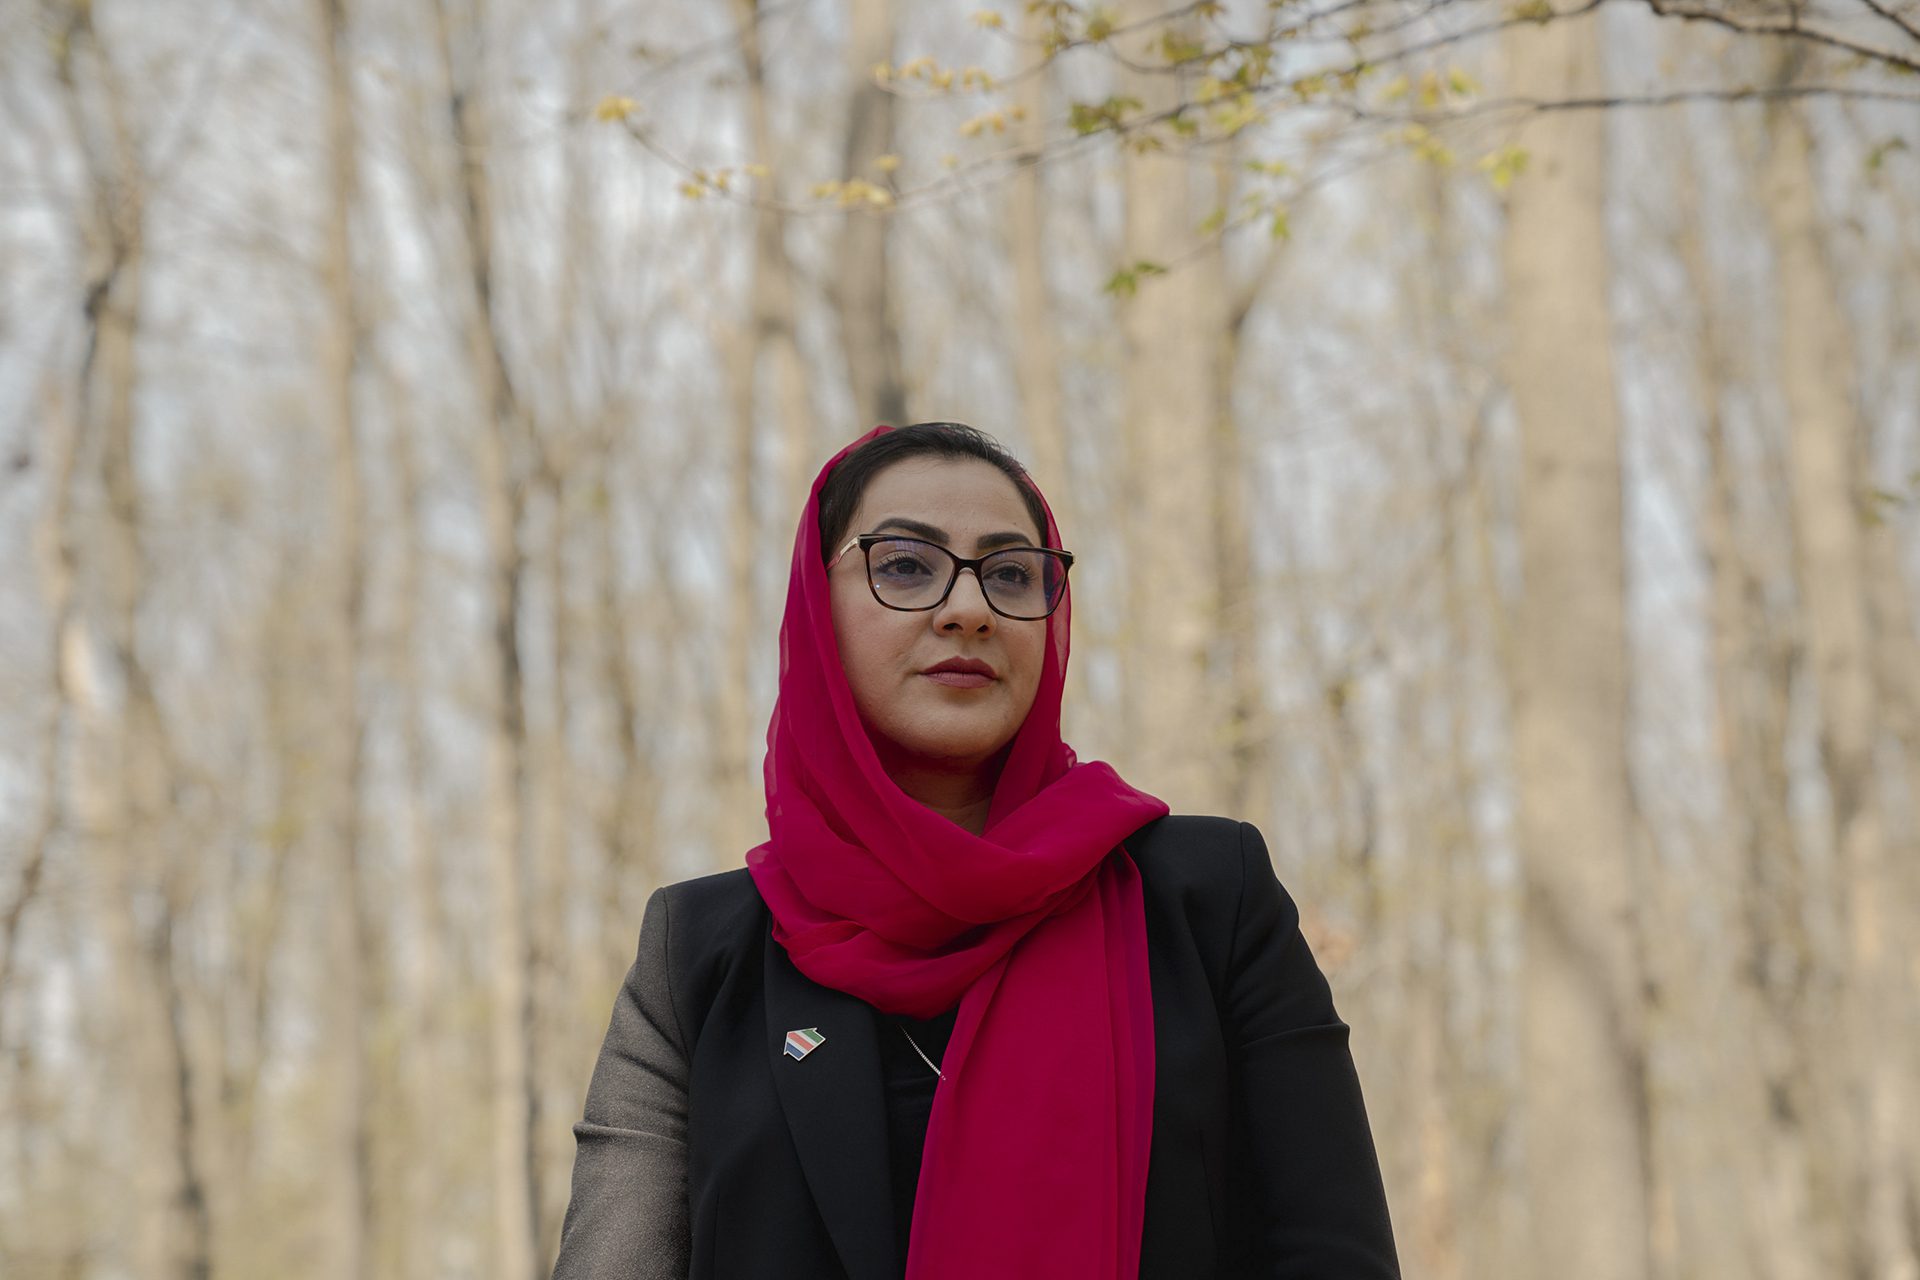 Naheed Farid con un pañuelo rojo y árboles detrás de ella